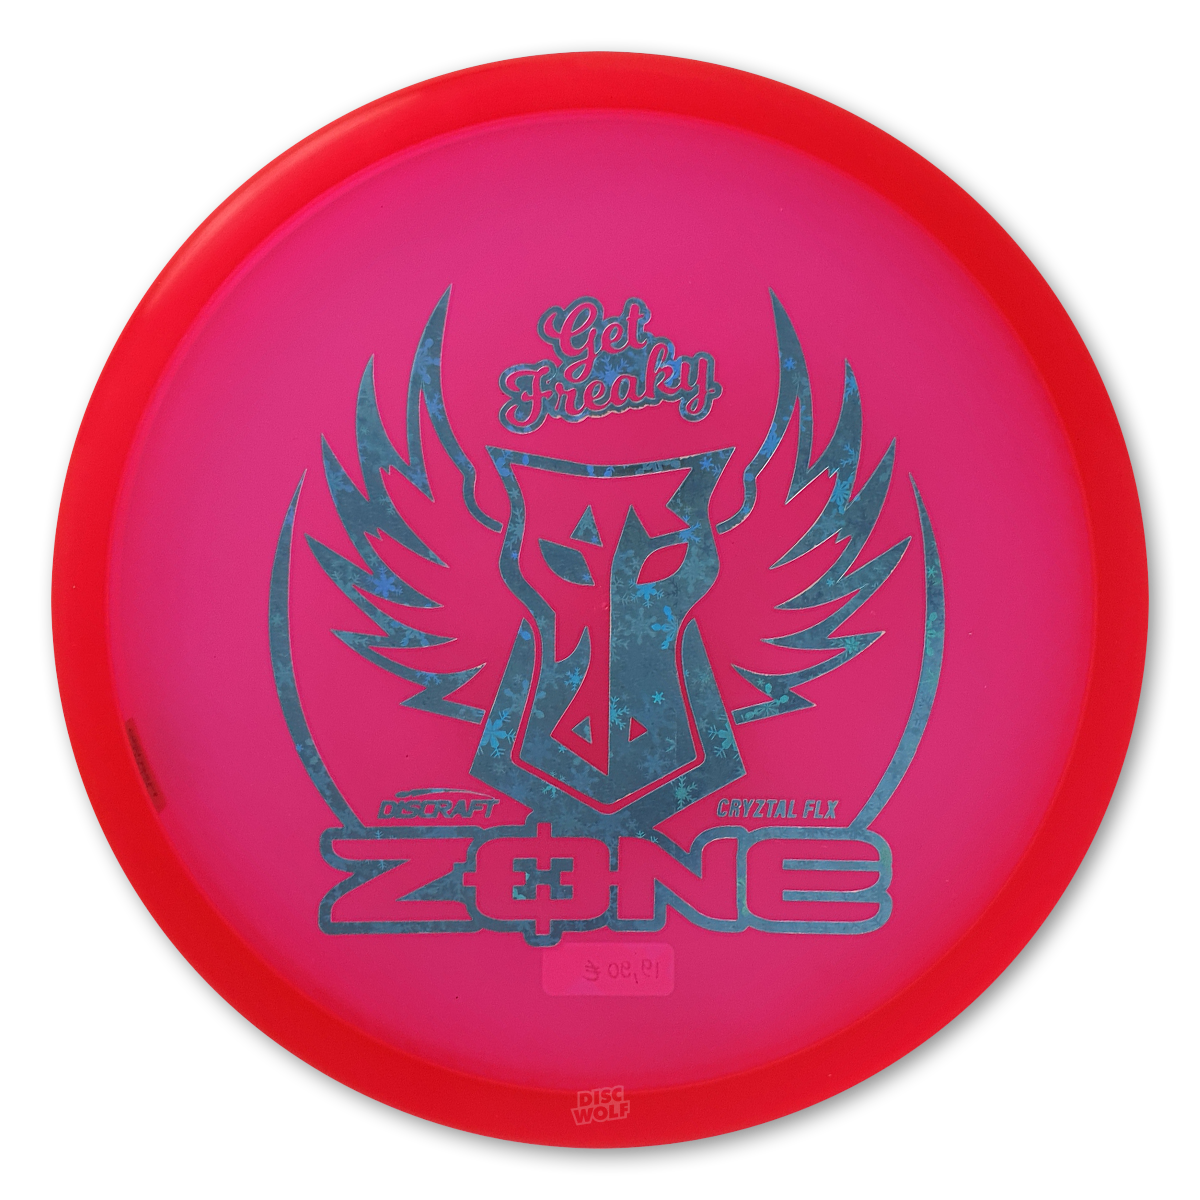 Zone Cryztal Z FLX "Get Freaky" Brodie Smith